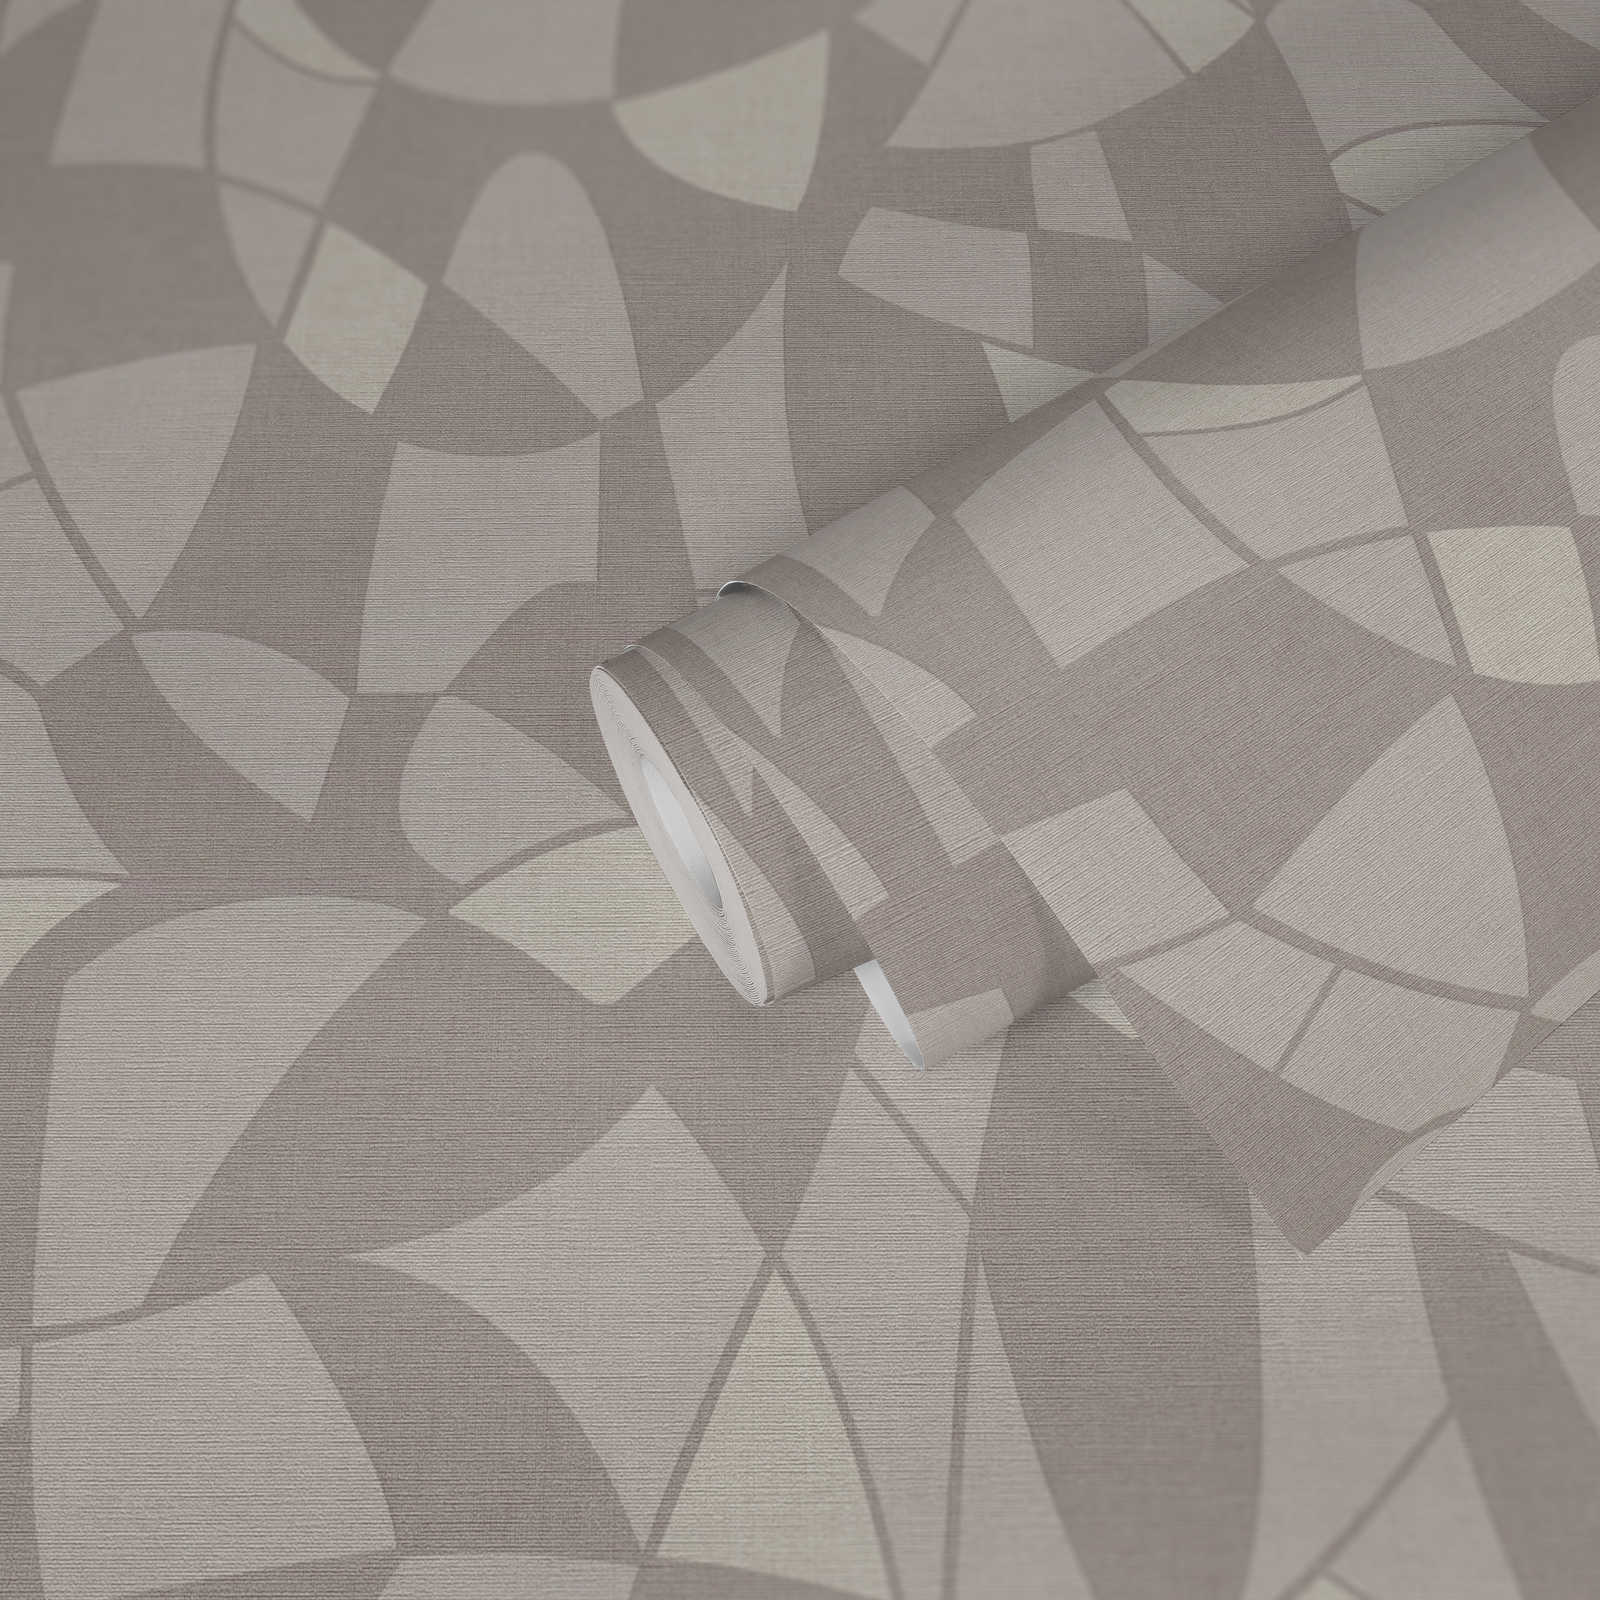             Papier peint intissé aux couleurs subtiles dans un motif abstrait - gris, crème
        